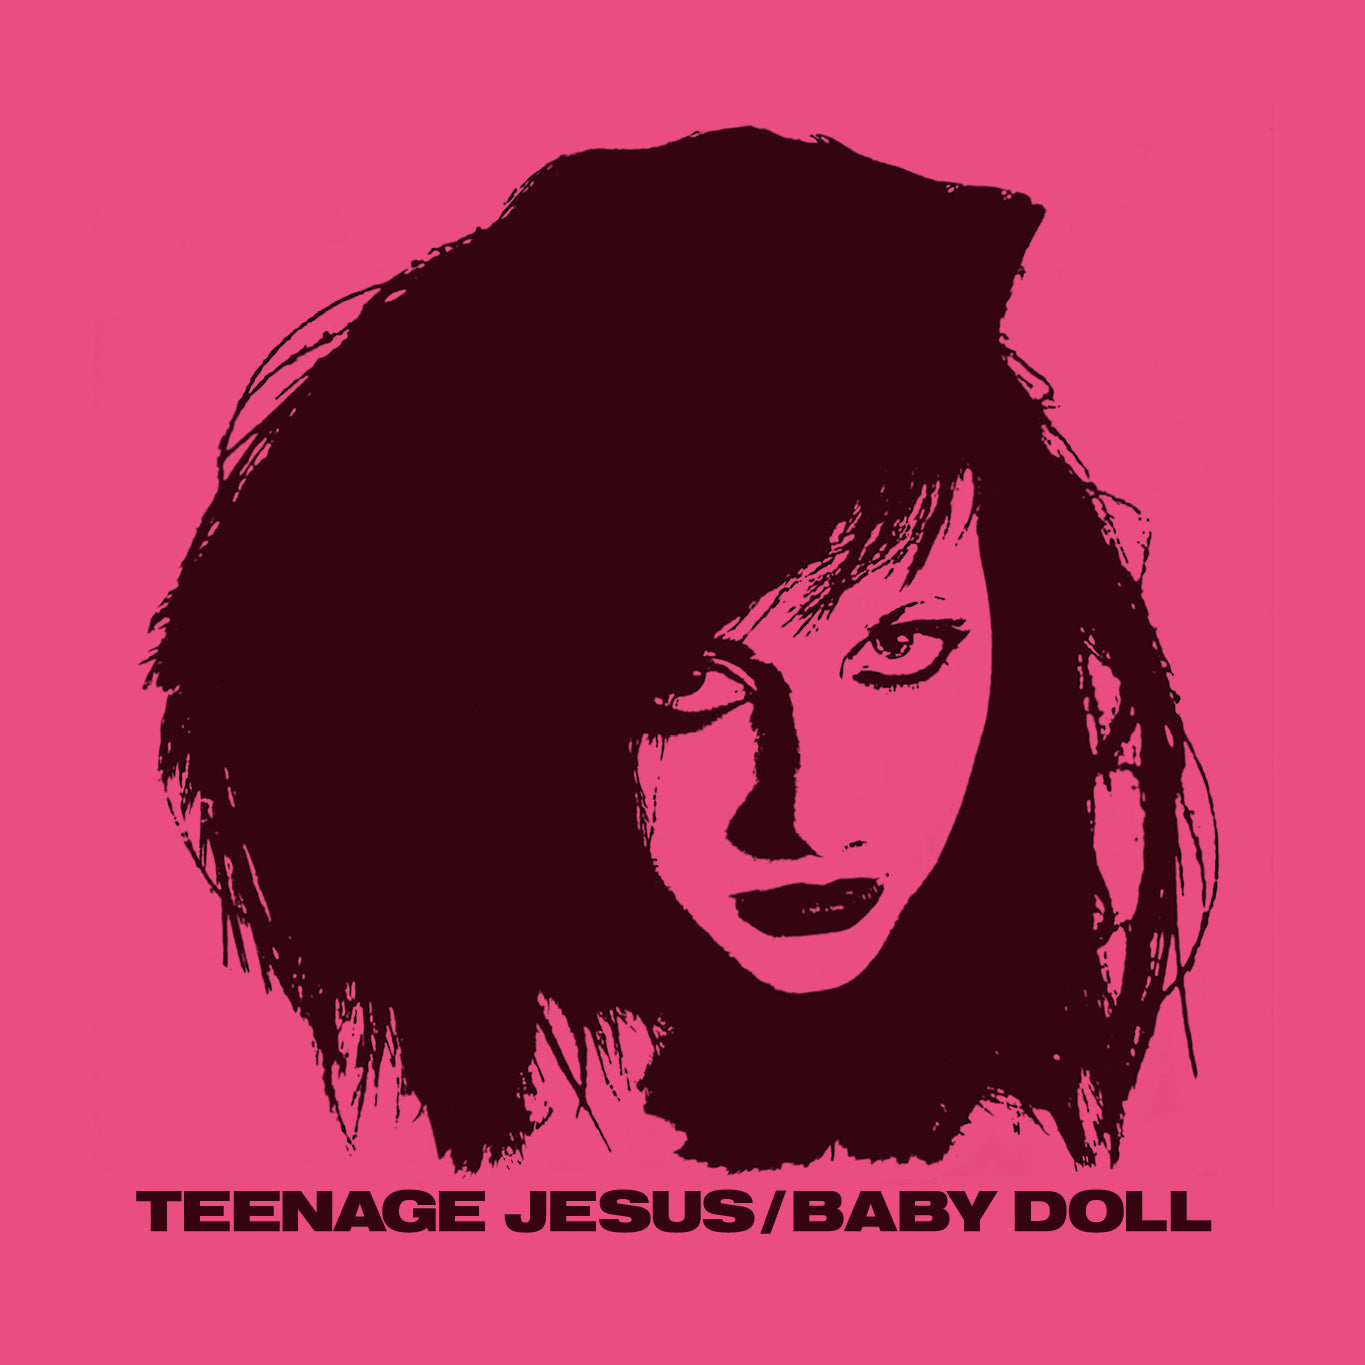 Diseño para camiseta punk rock de la banda Teenage Jesus con Lydia Lunch